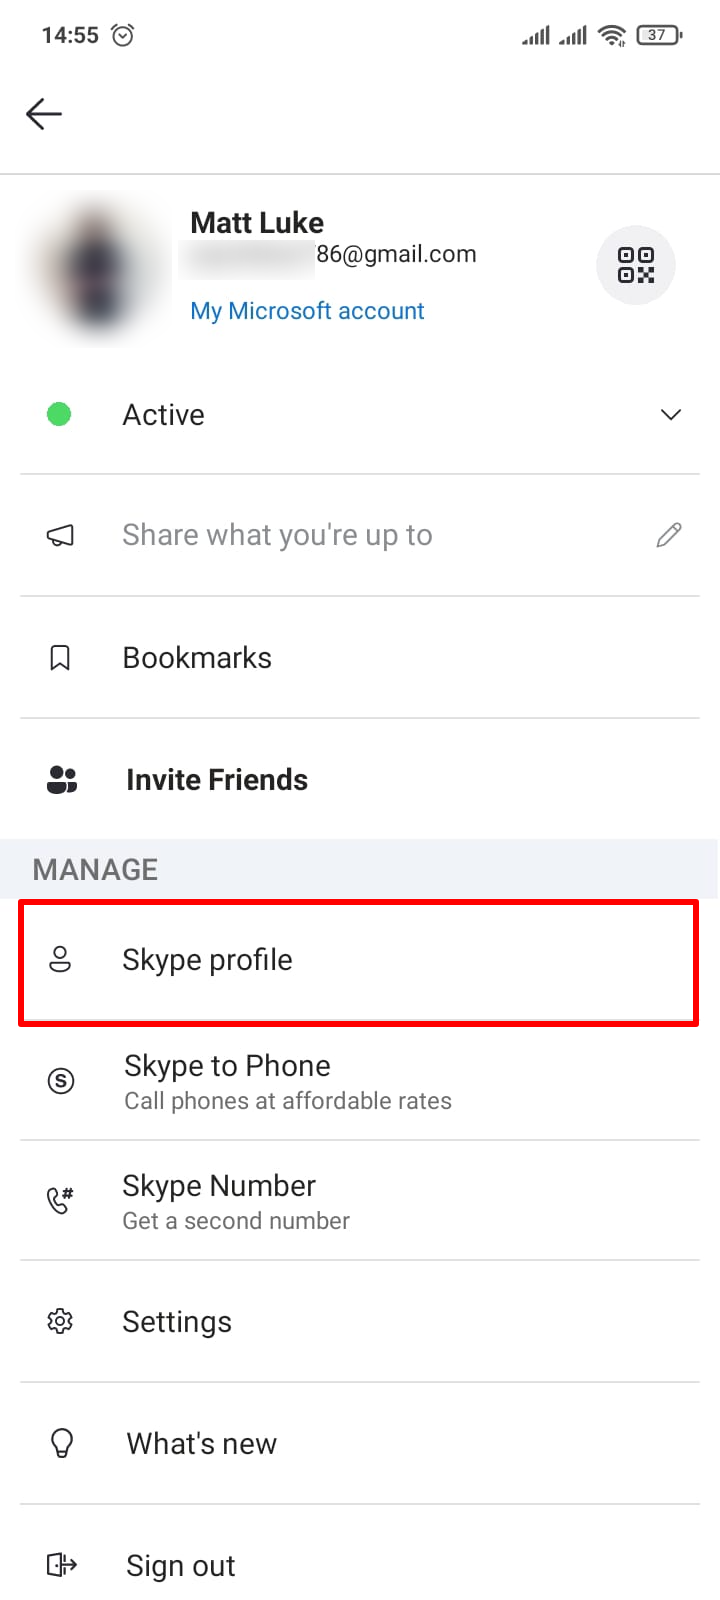 Configurações do aplicativo Skype para Android com perfil do Skype em destaque